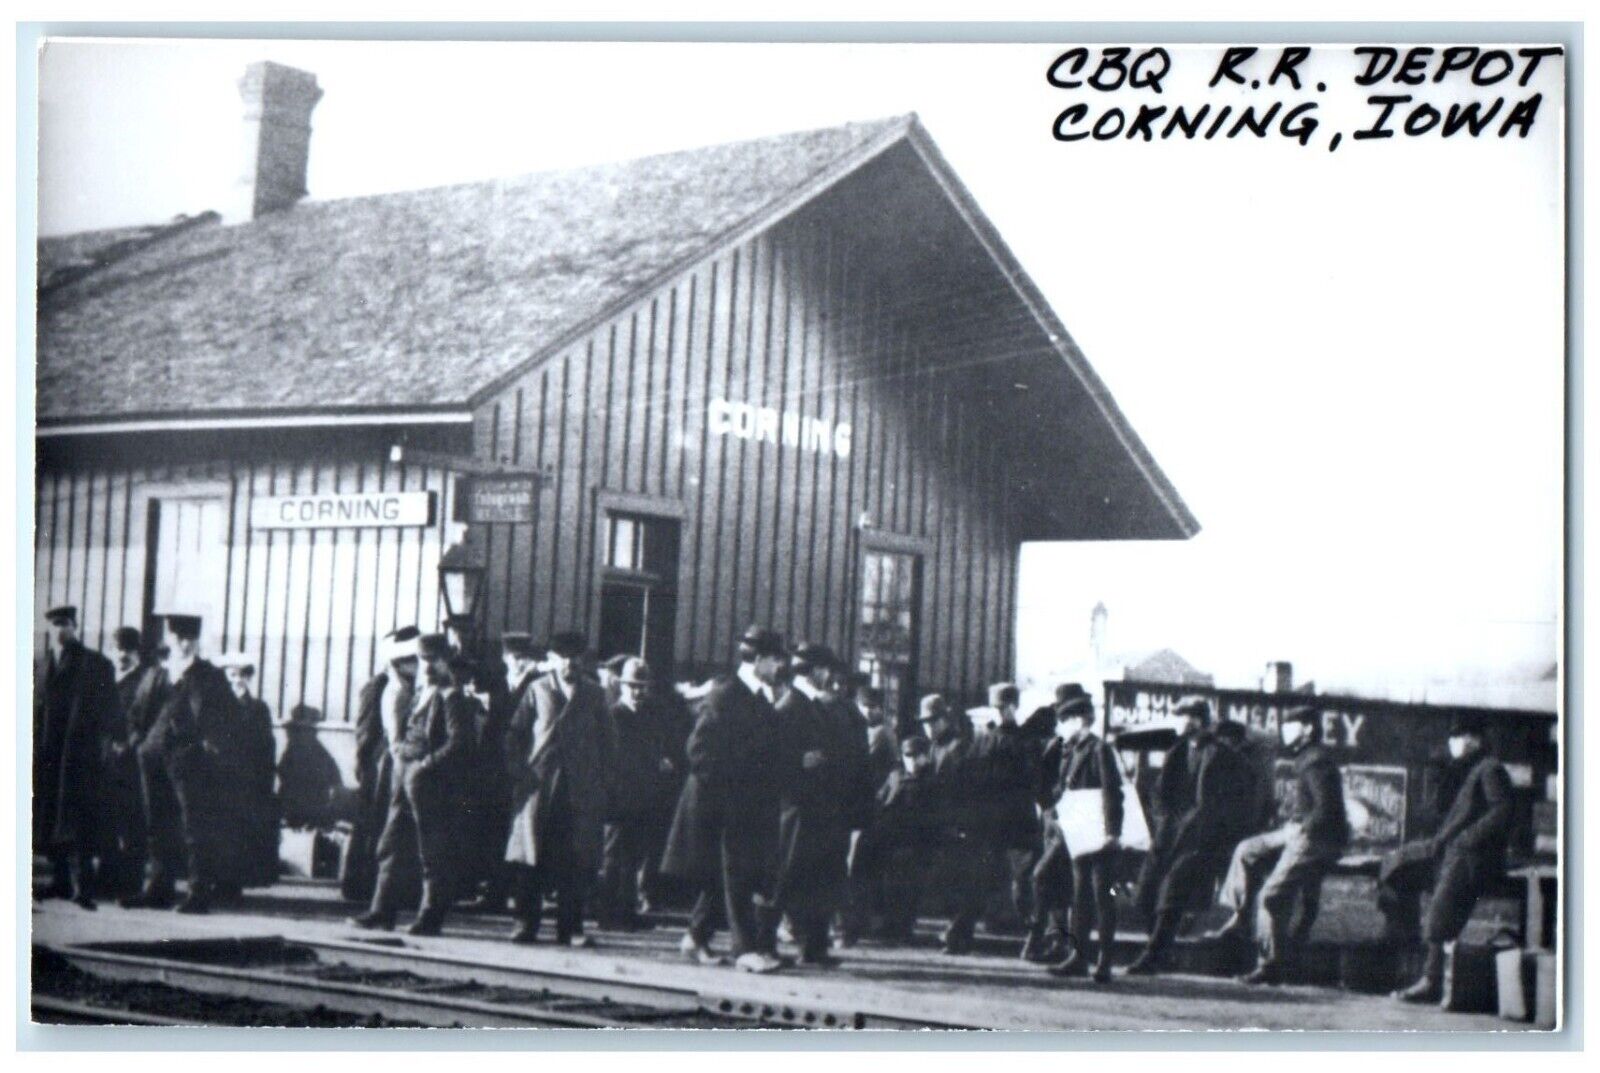 c1960 CBQ Depot Corning Iowa IA Railroad Train Depot Station RPPC Photo Postcard